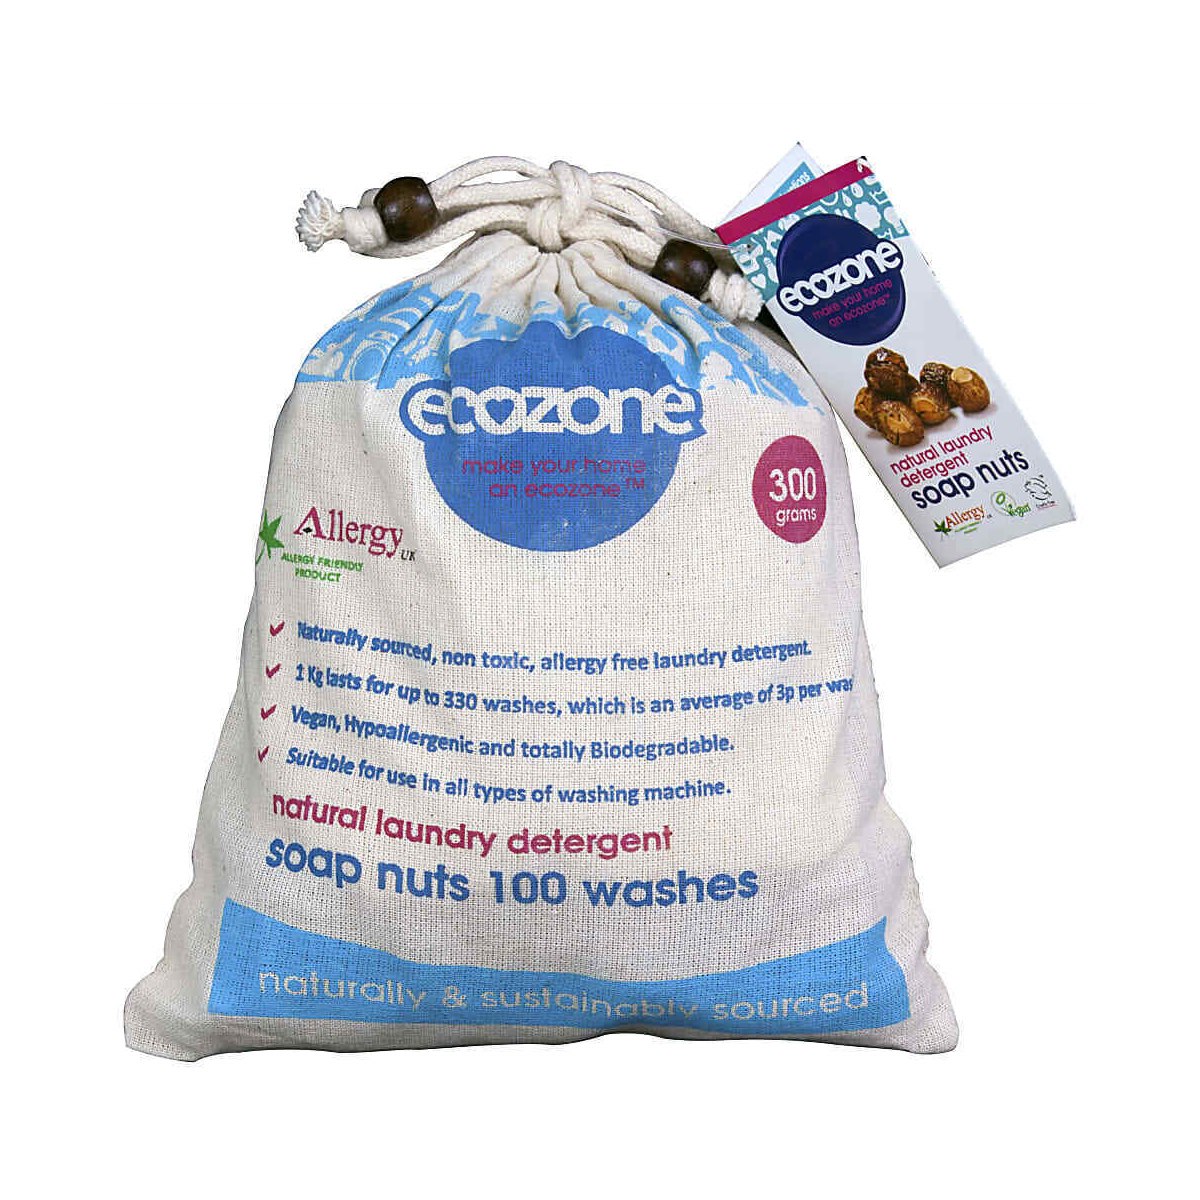 Ecozone Soap Nuts 300g 100 Washes